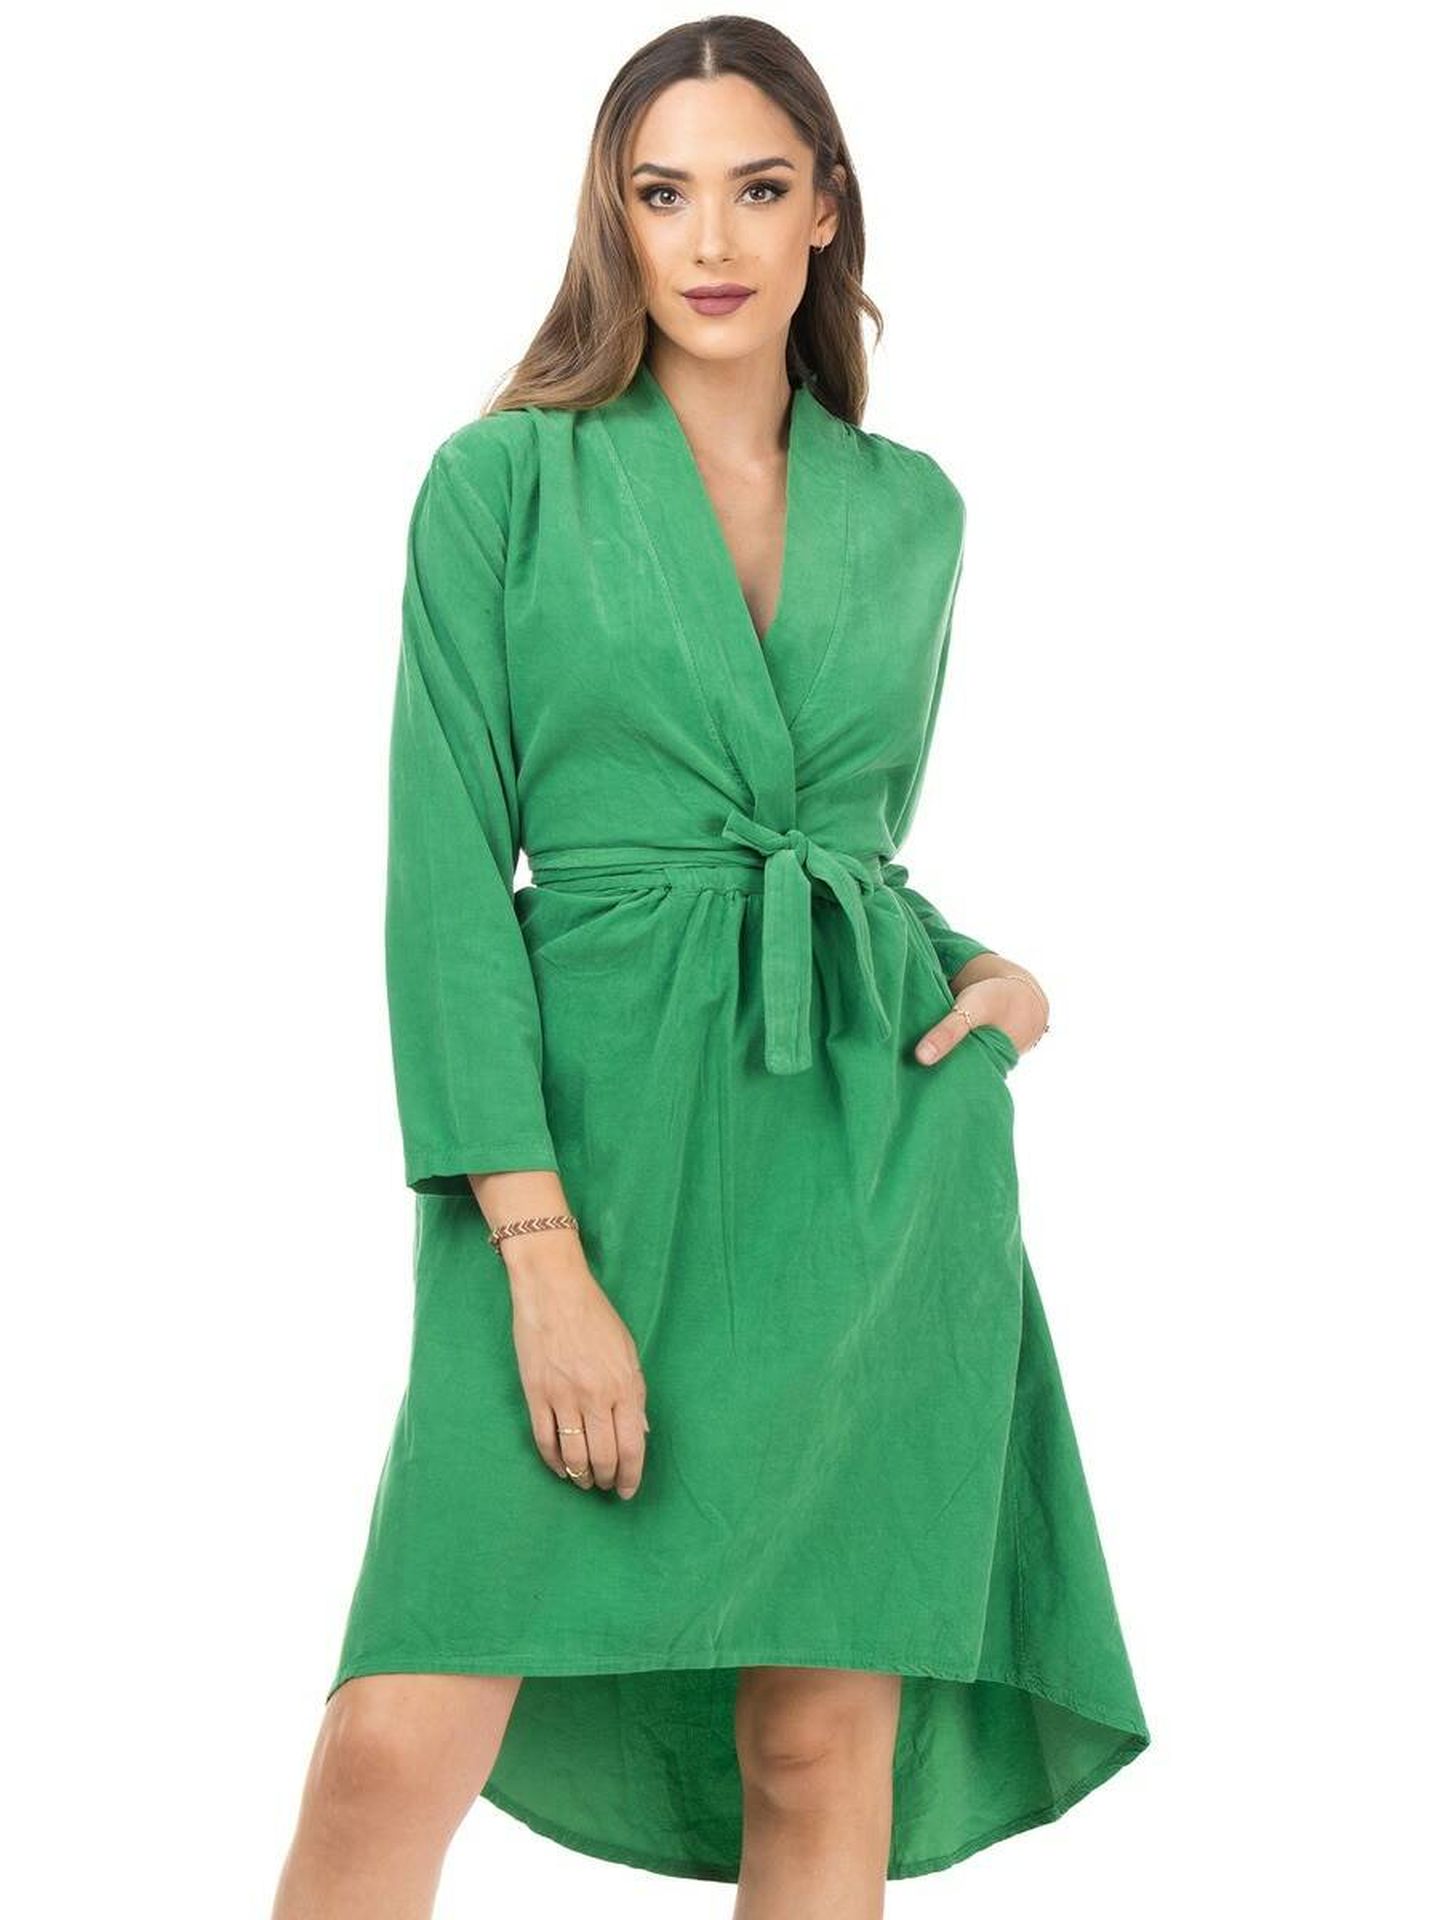 Vestido verde de El Corte Inglés. (Cortesía)